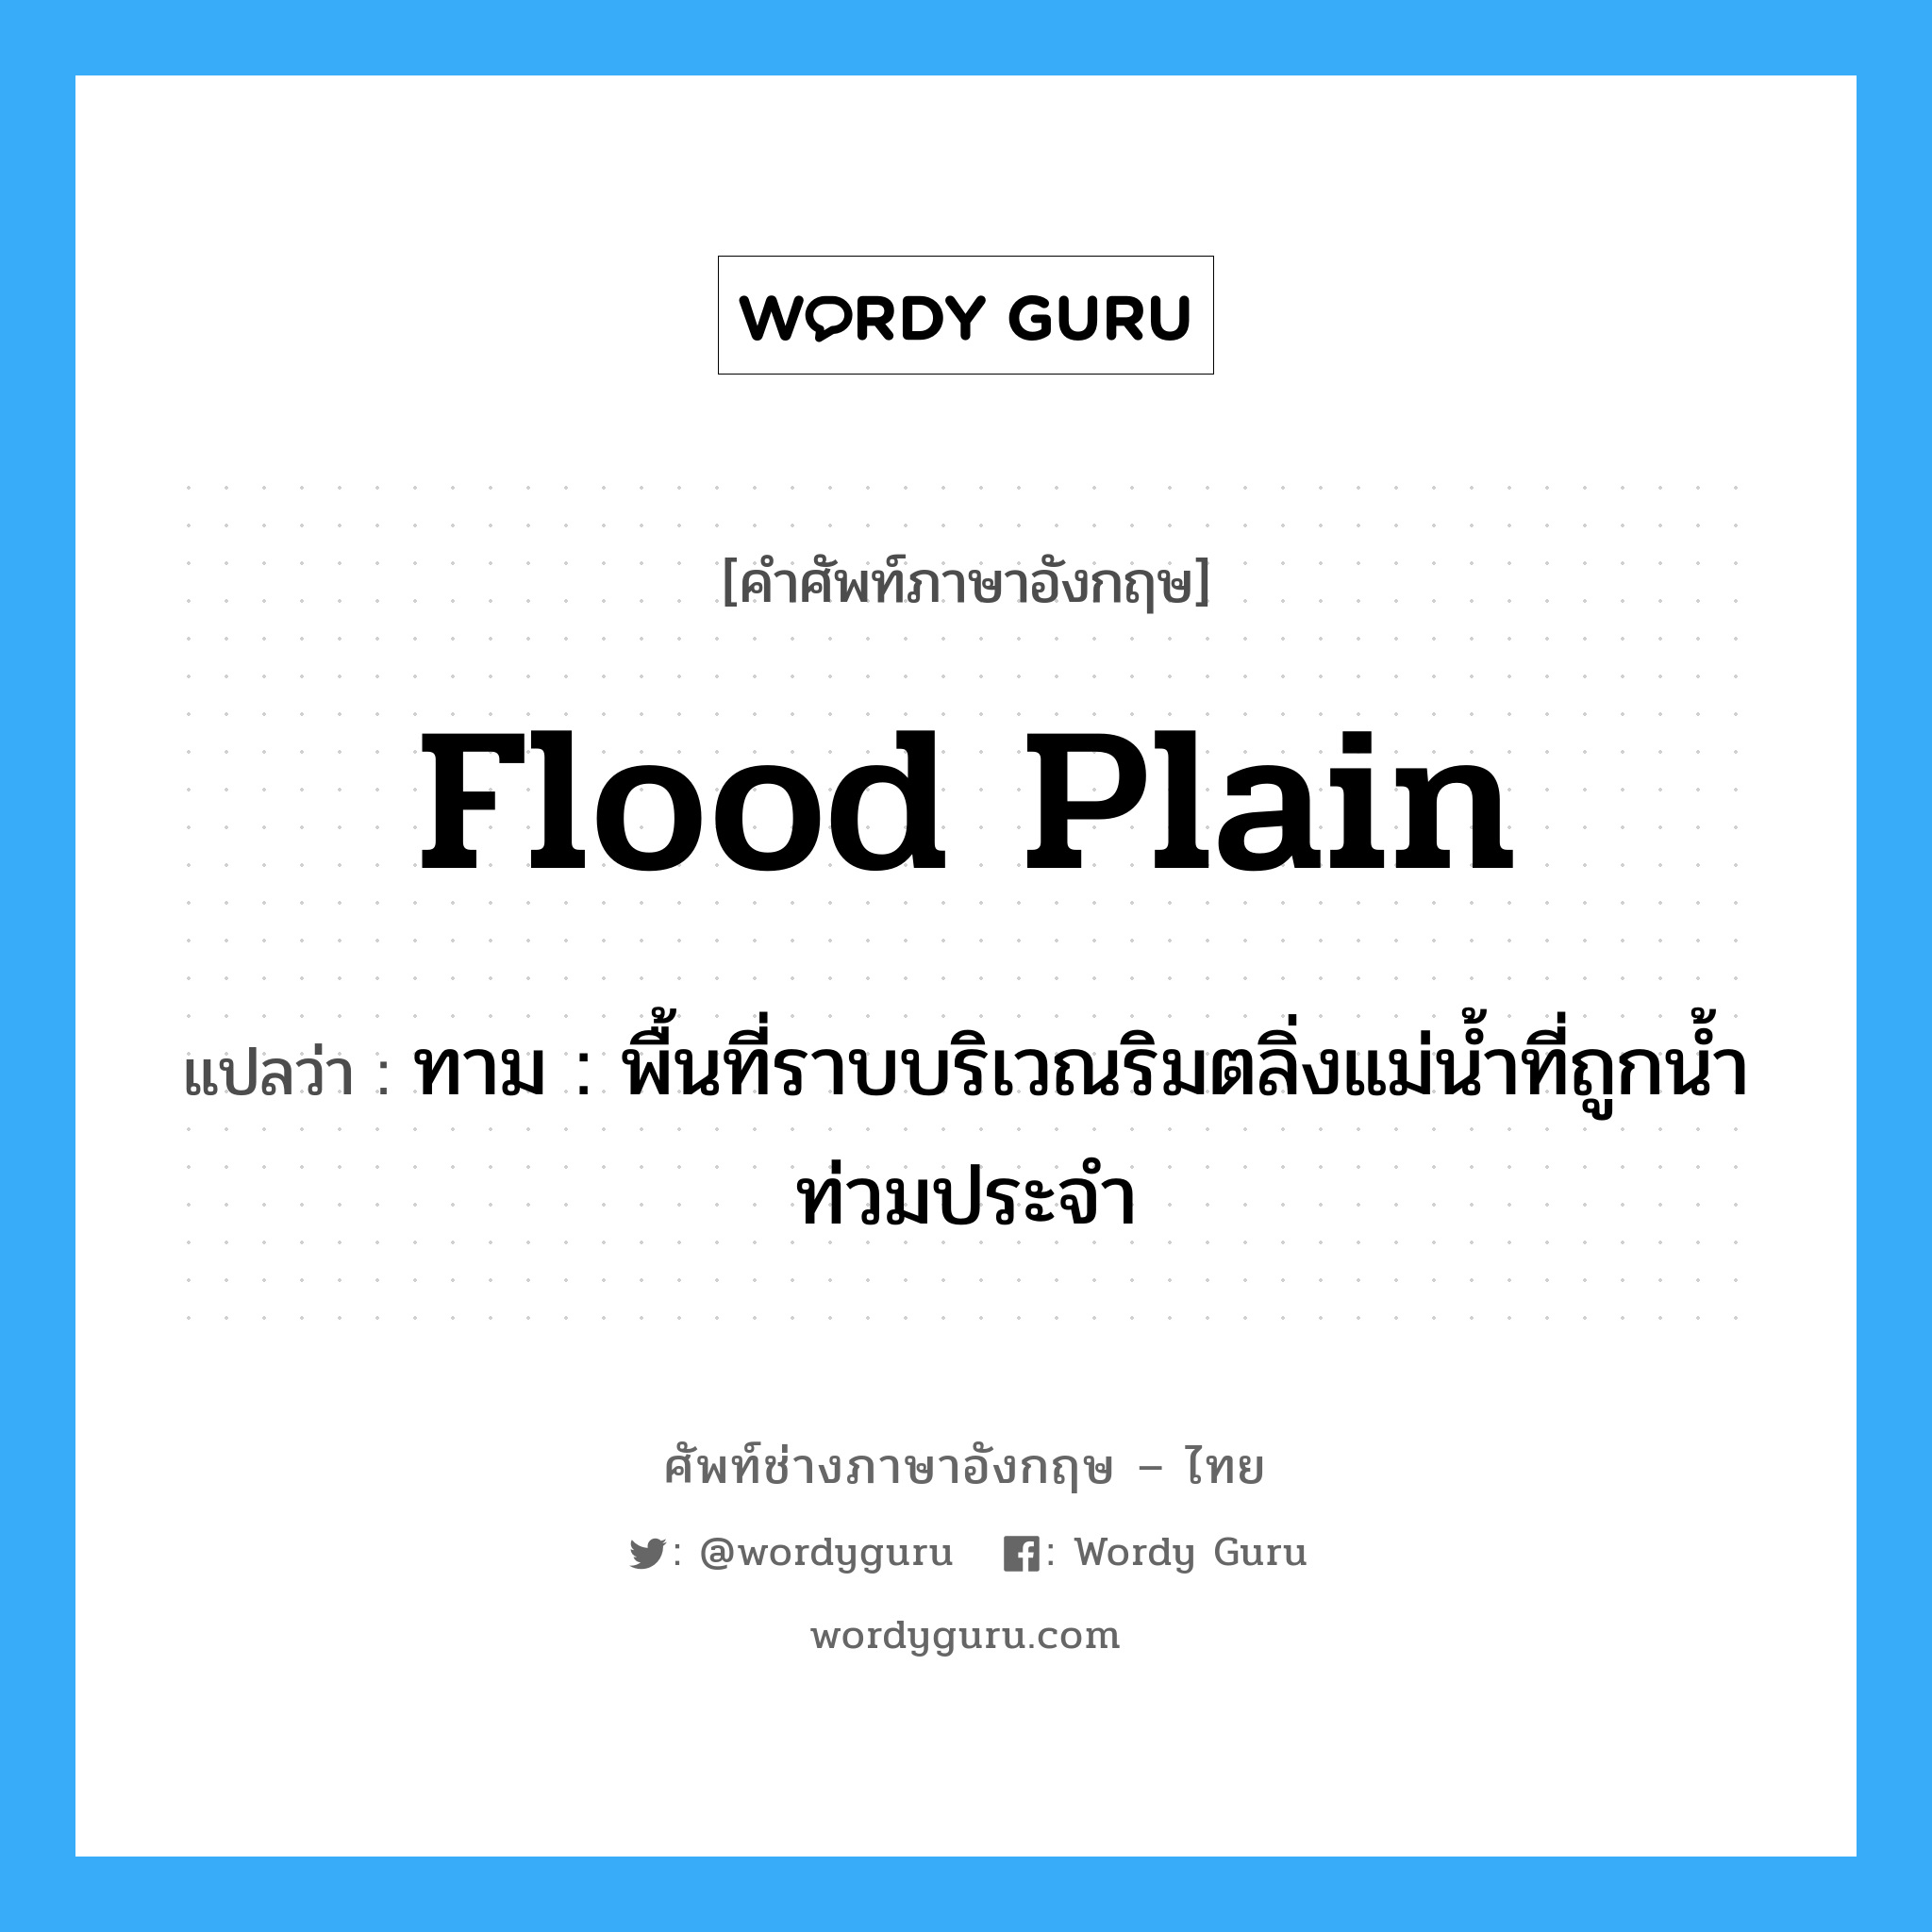 flood plain แปลว่า?, คำศัพท์ช่างภาษาอังกฤษ - ไทย flood plain คำศัพท์ภาษาอังกฤษ flood plain แปลว่า ทาม : พื้นที่ราบบริเวณริมตลิ่งแม่น้ำที่ถูกน้ำท่วมประจำ